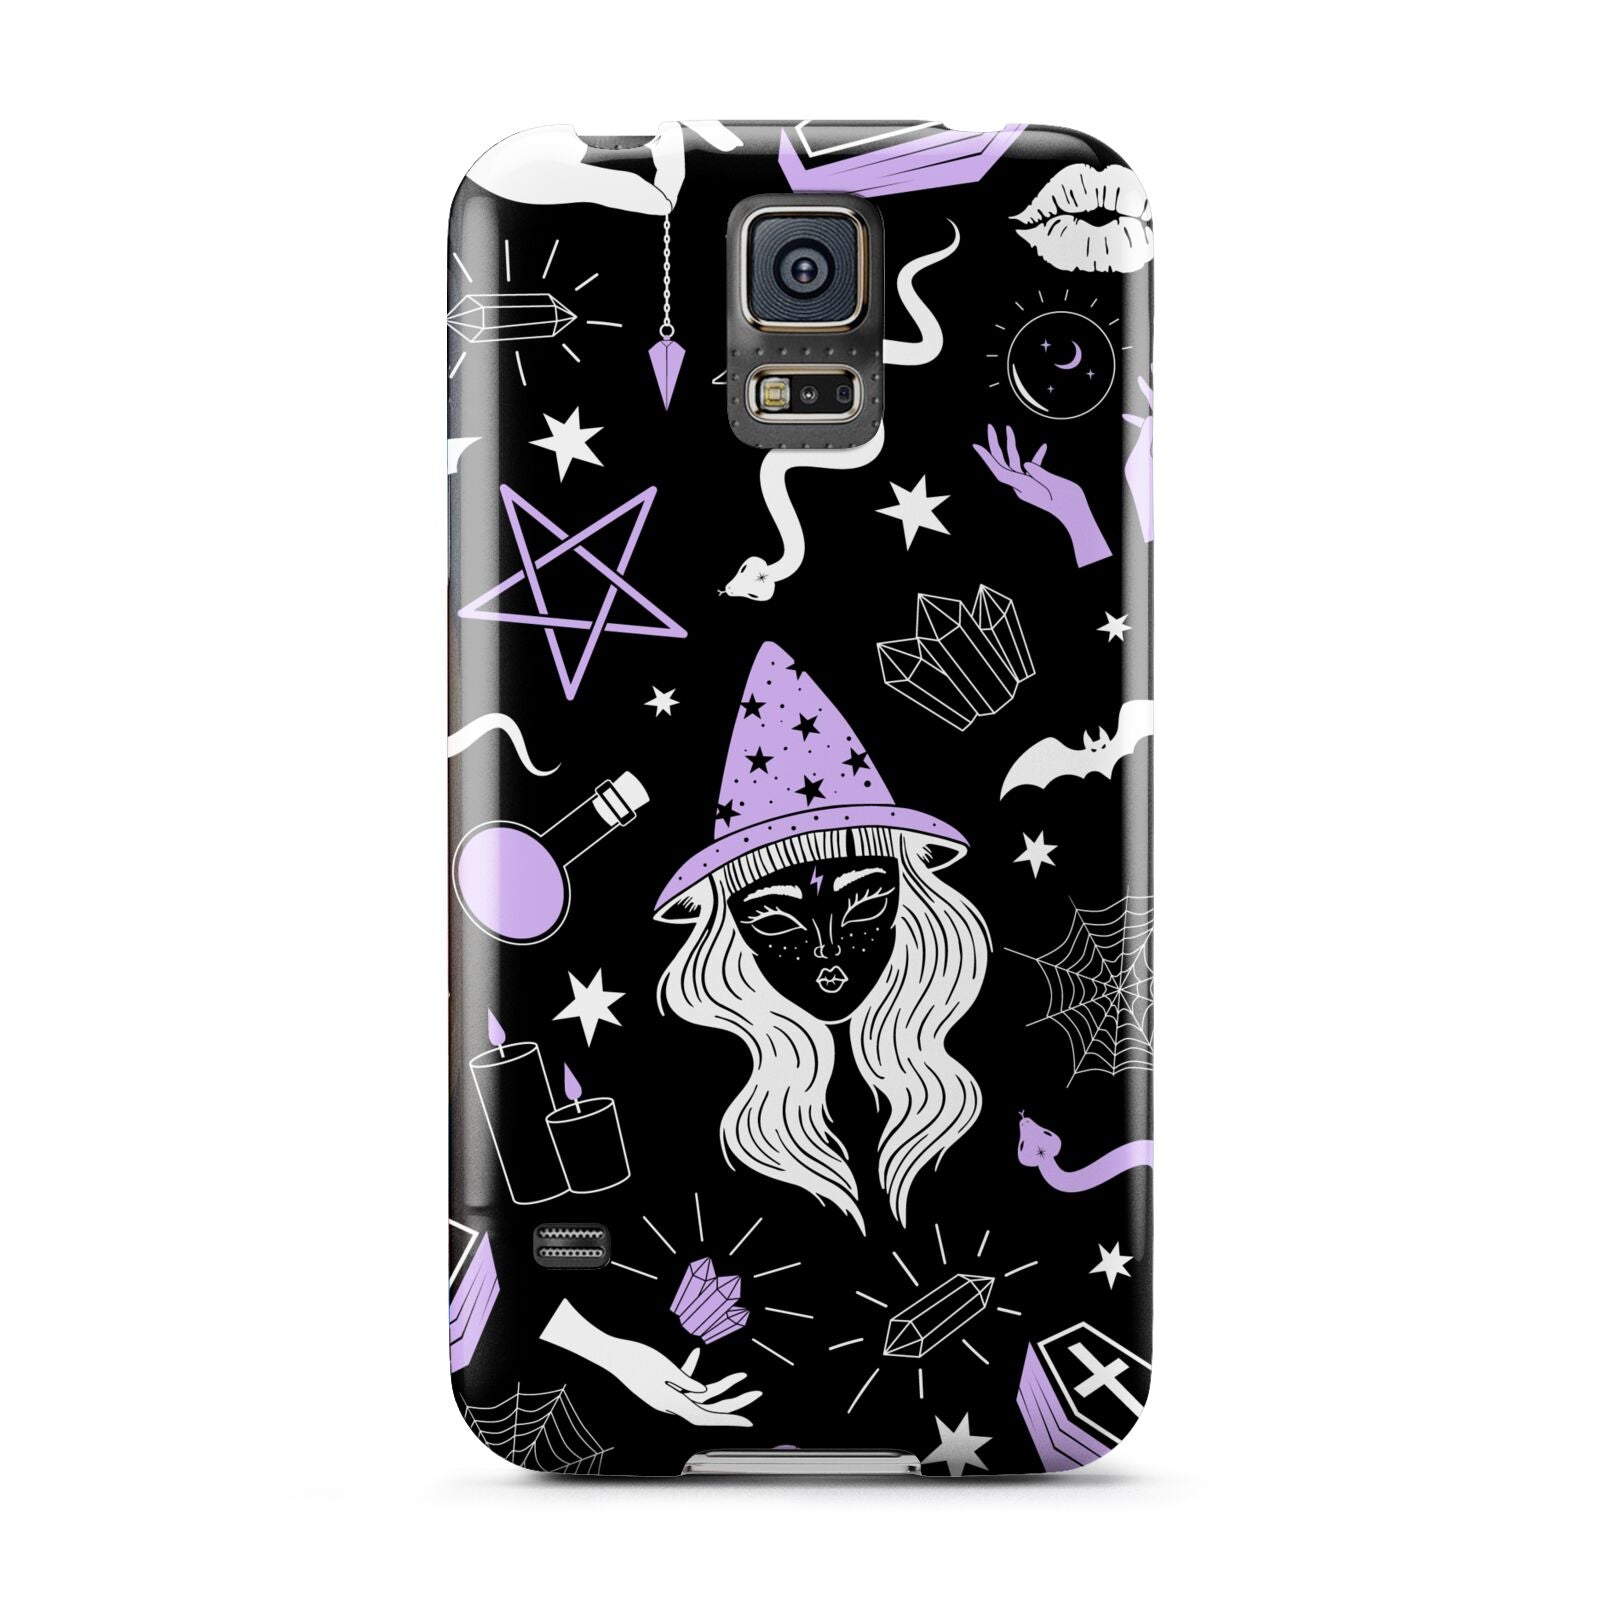 Witch Samsung Galaxy S5 Case